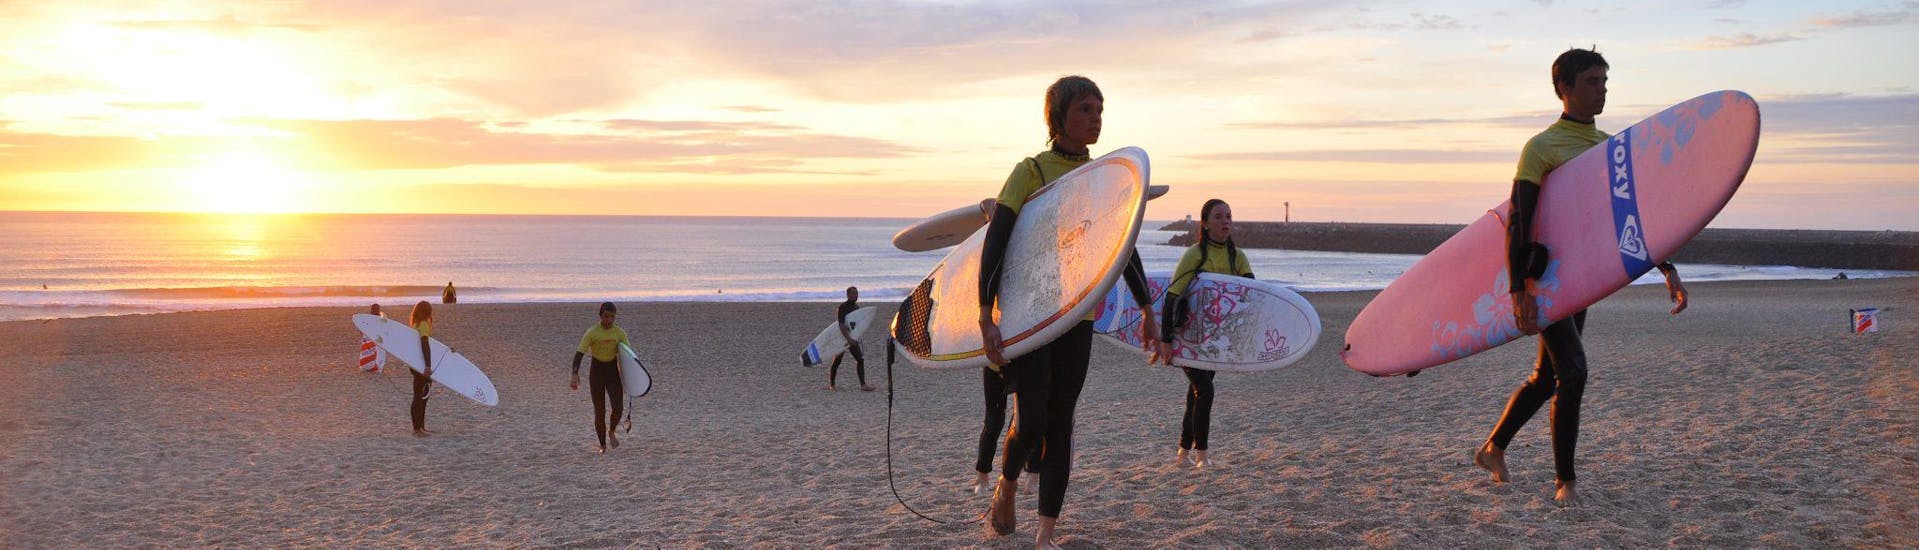 Un grupo de jóvenes surfistas en la playa al atardecer.